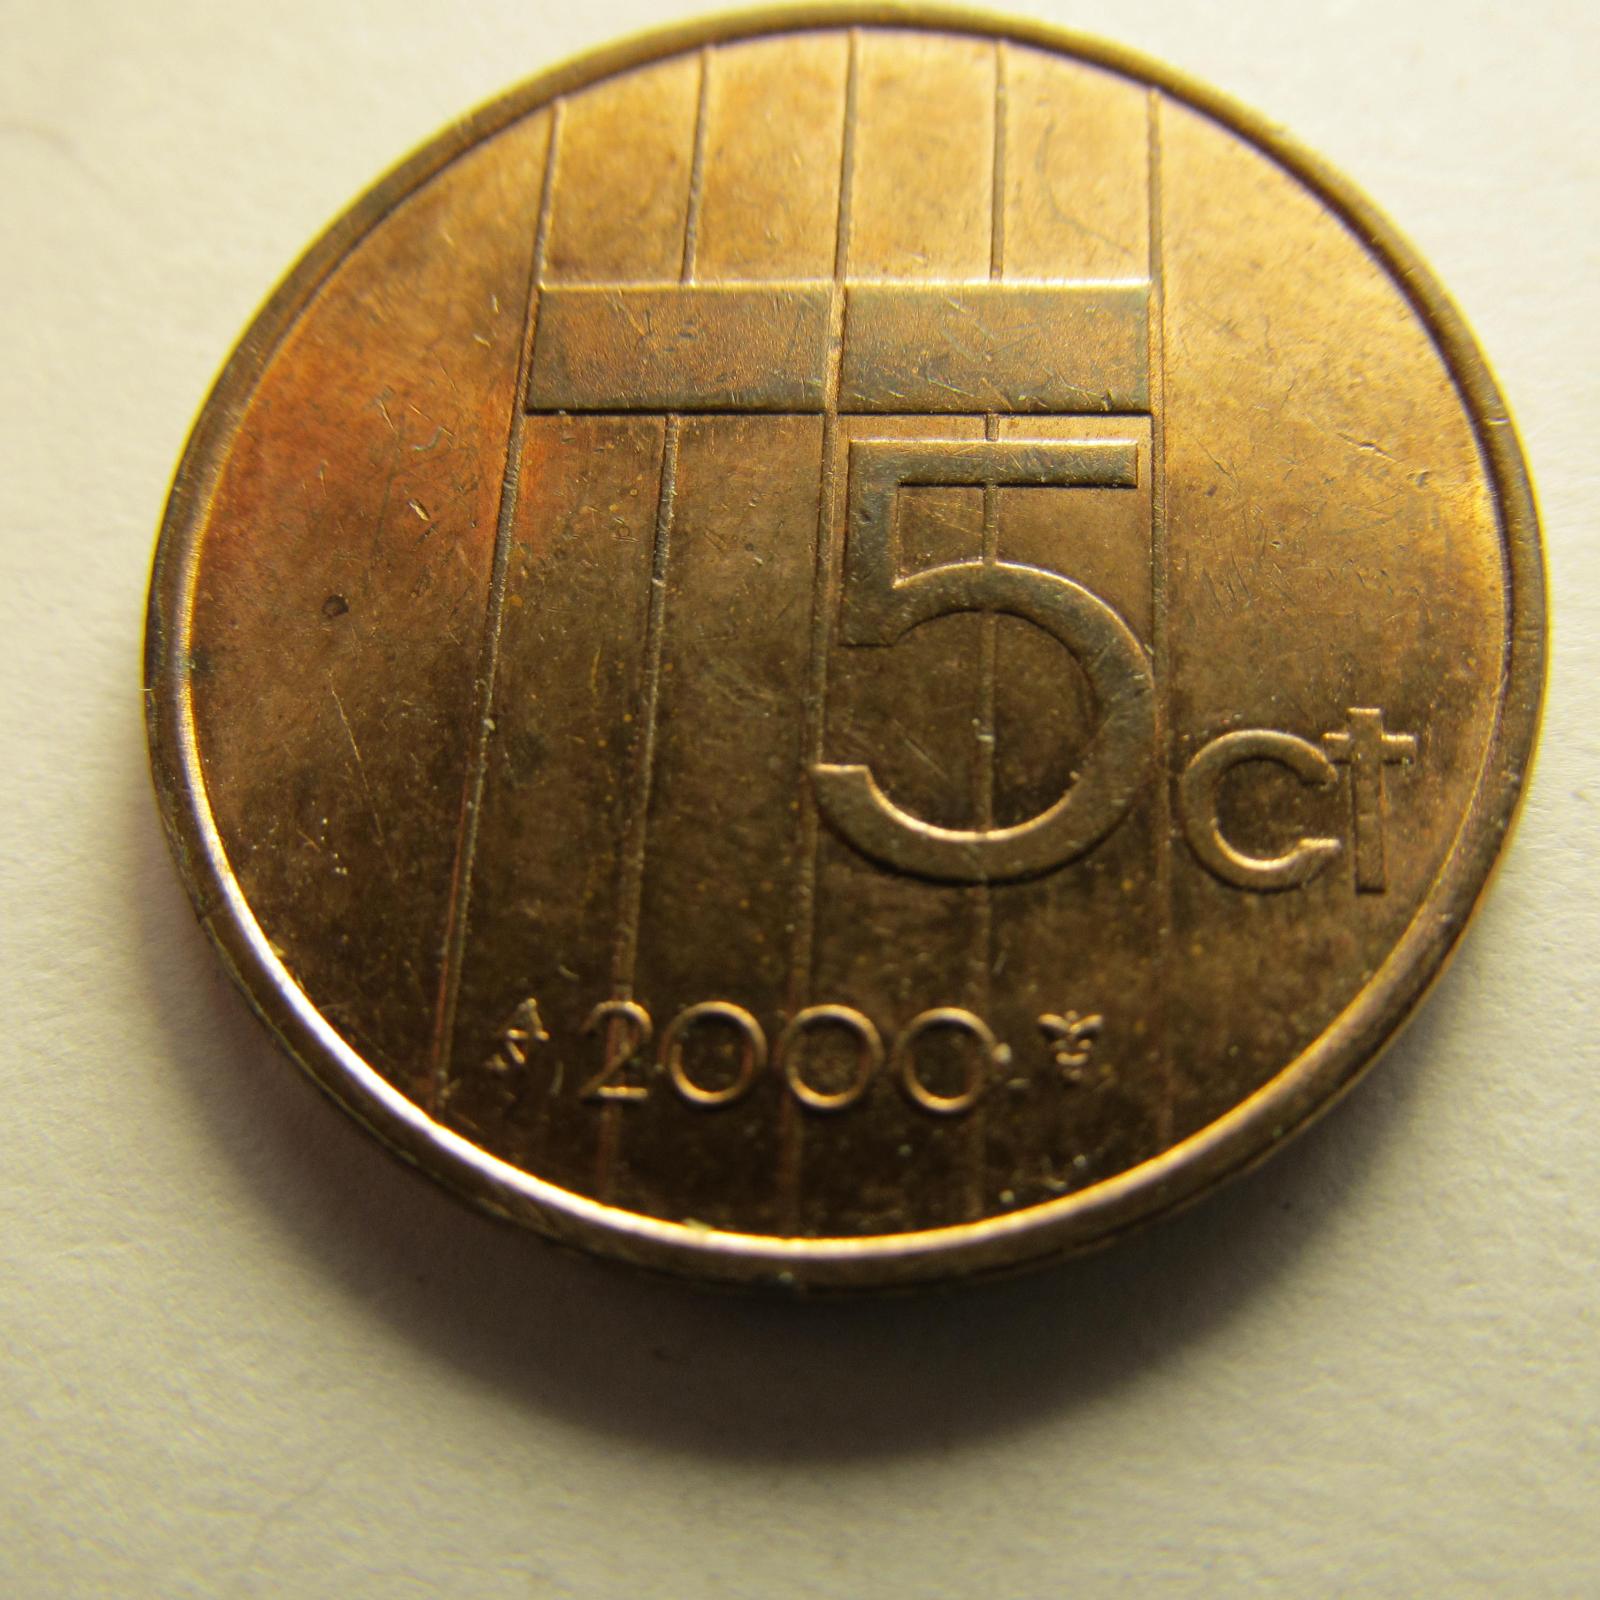 Nizozemsko - 5 cents z roku 1990 -2000, sada 11 kusů - Numismatika